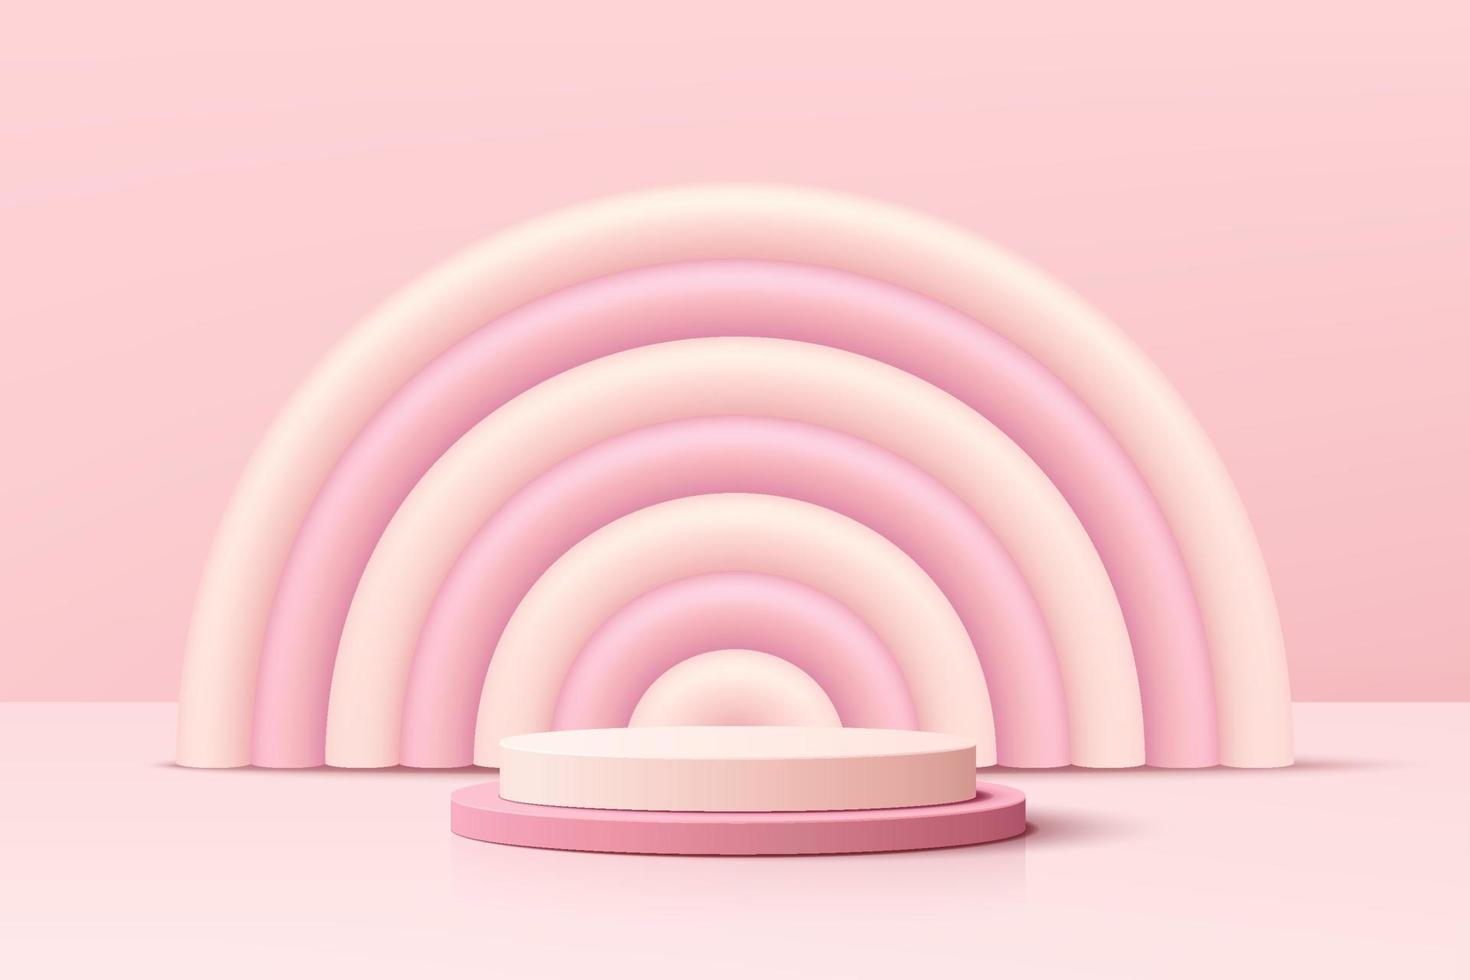 realistisch roze 3d cilinder voetstuk podium met roze en witte ballon boogvorm. Valentijn pastel minimale scène voor producten showcase, promotie display. vector abstract studio kamer platform ontwerp